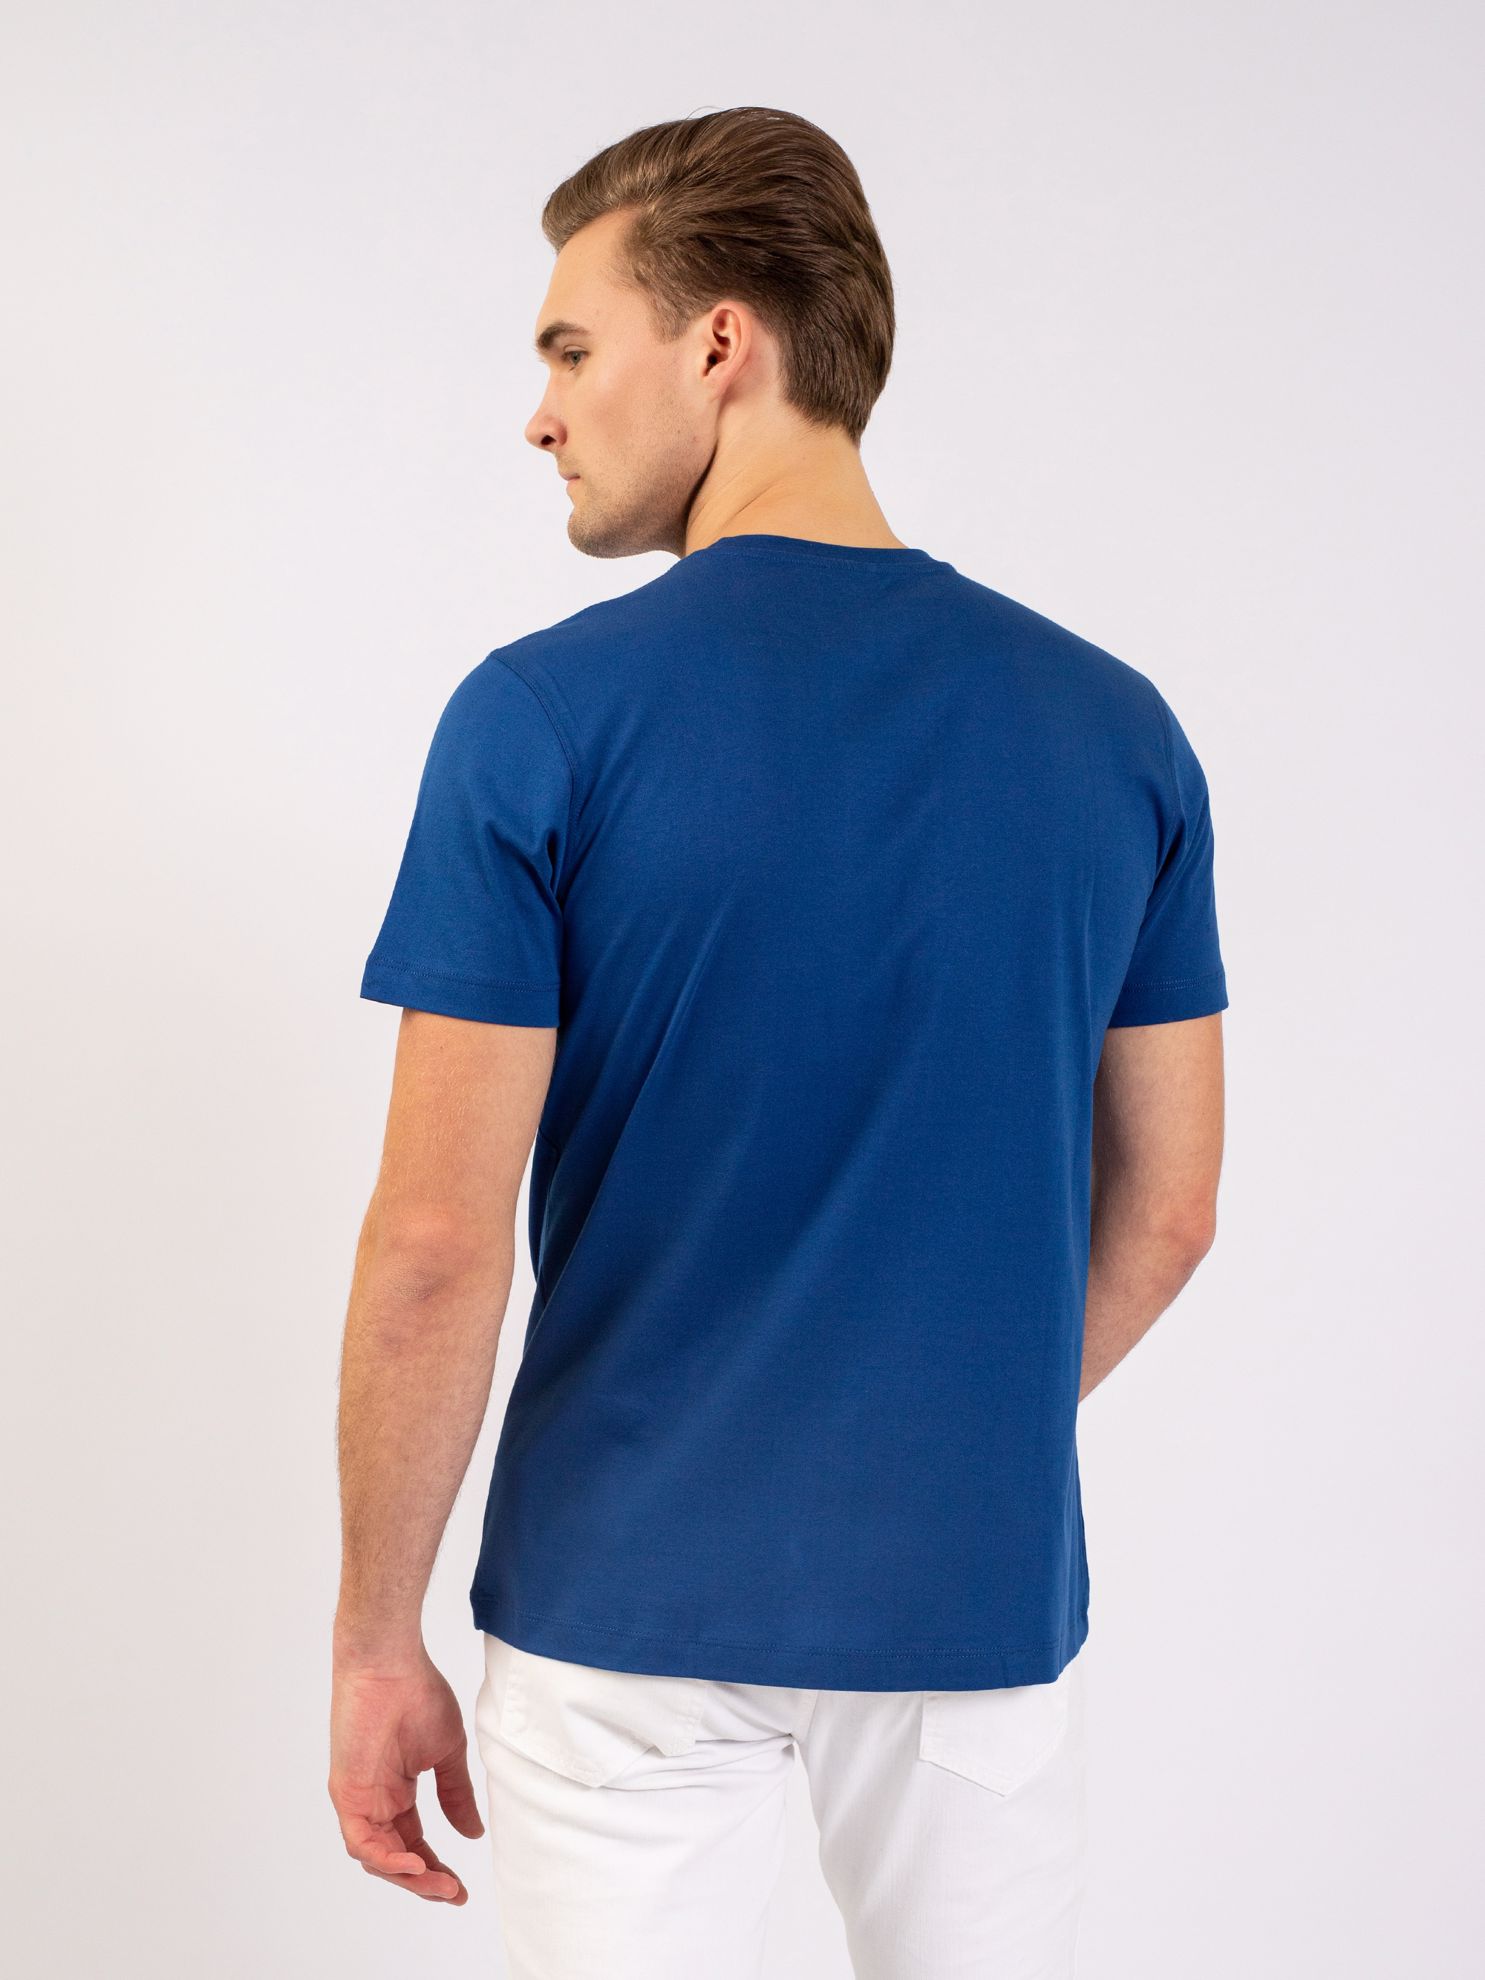 Karaca Erkek Slim Fit Tişört-Havacı Mavi. ürün görseli